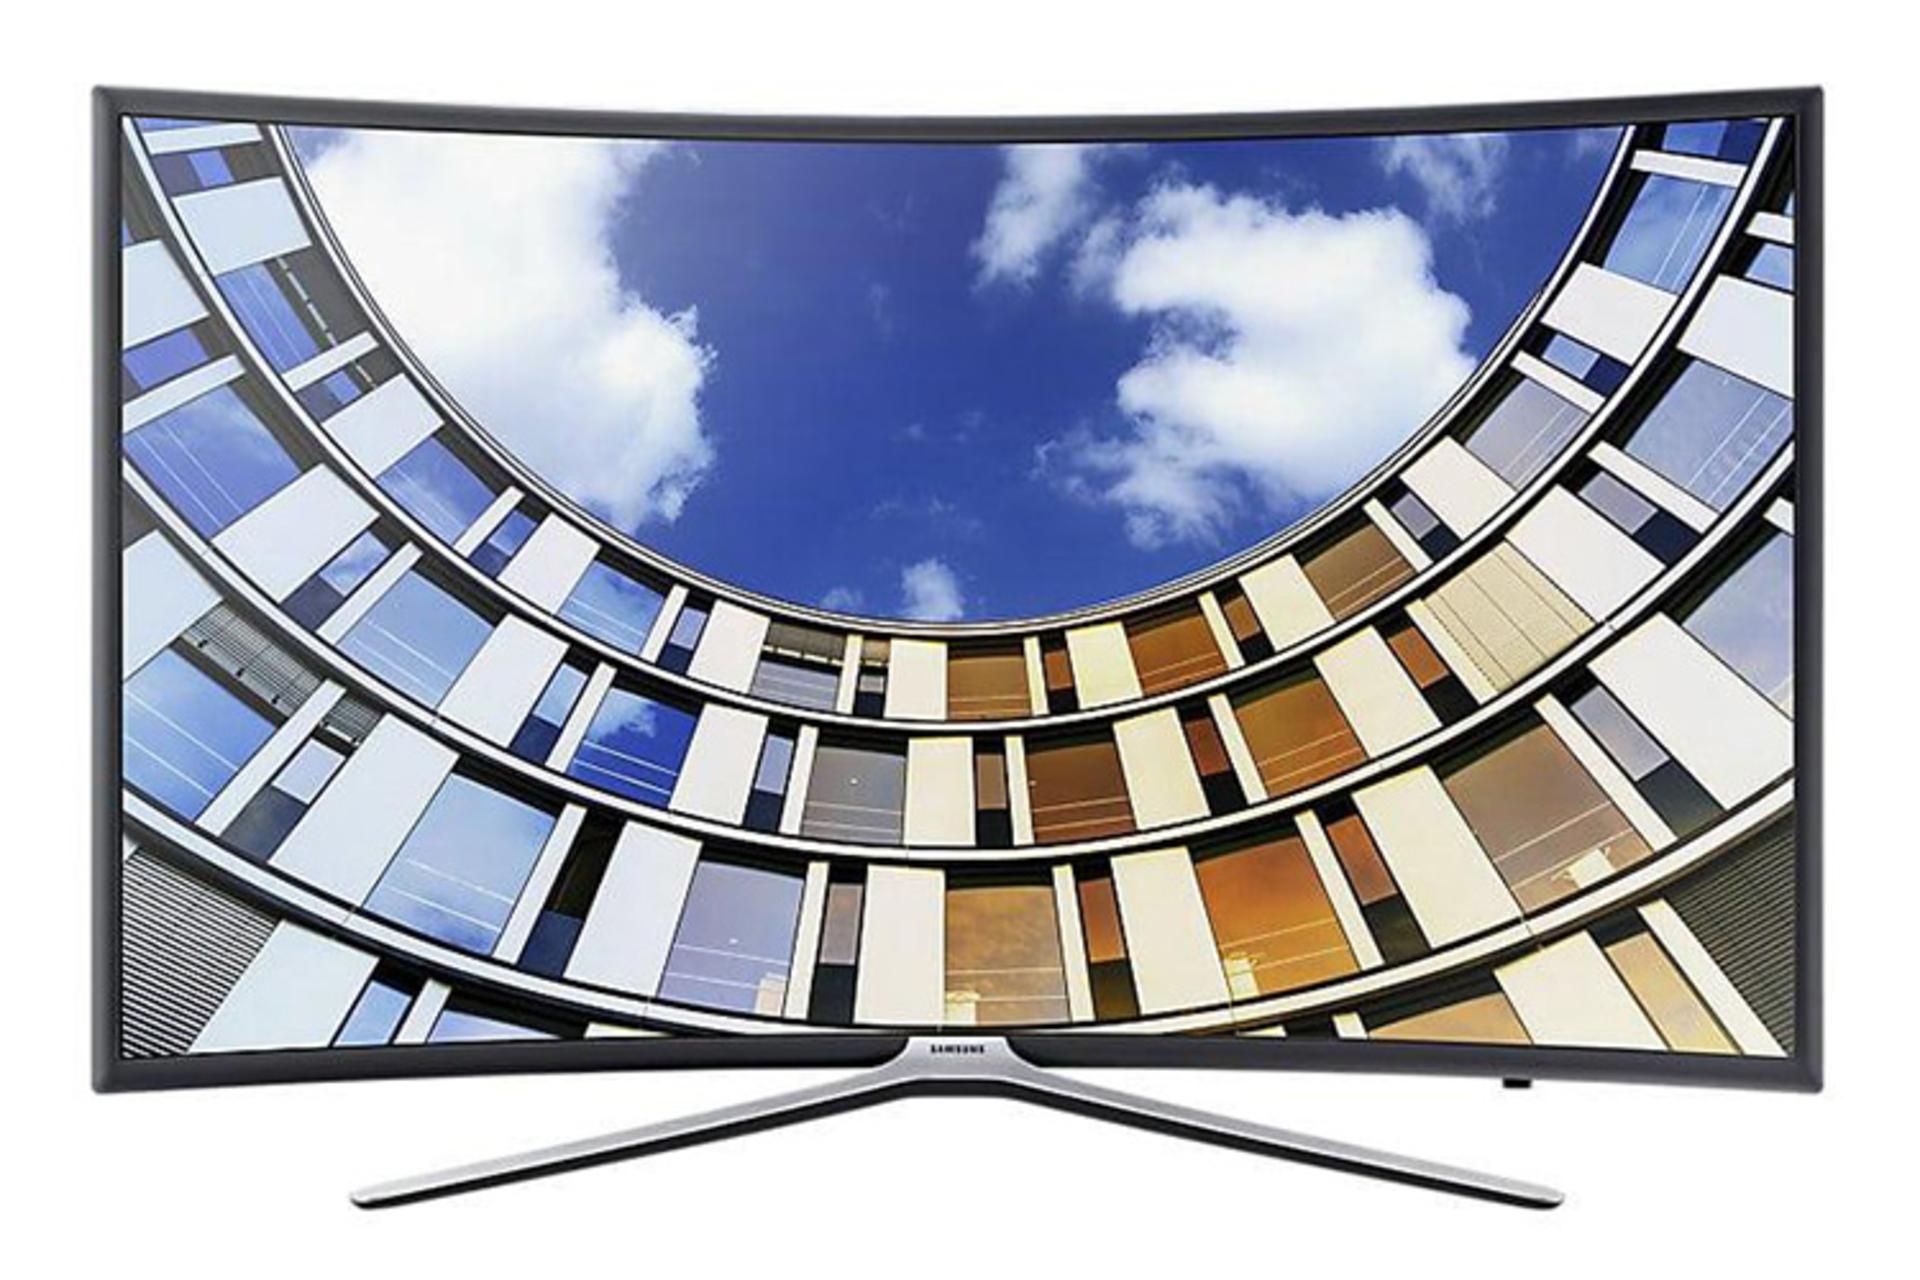 نمای جلو تلویزیون سامسونگ N6950 مدل 49 اینچ با صفحه روشن